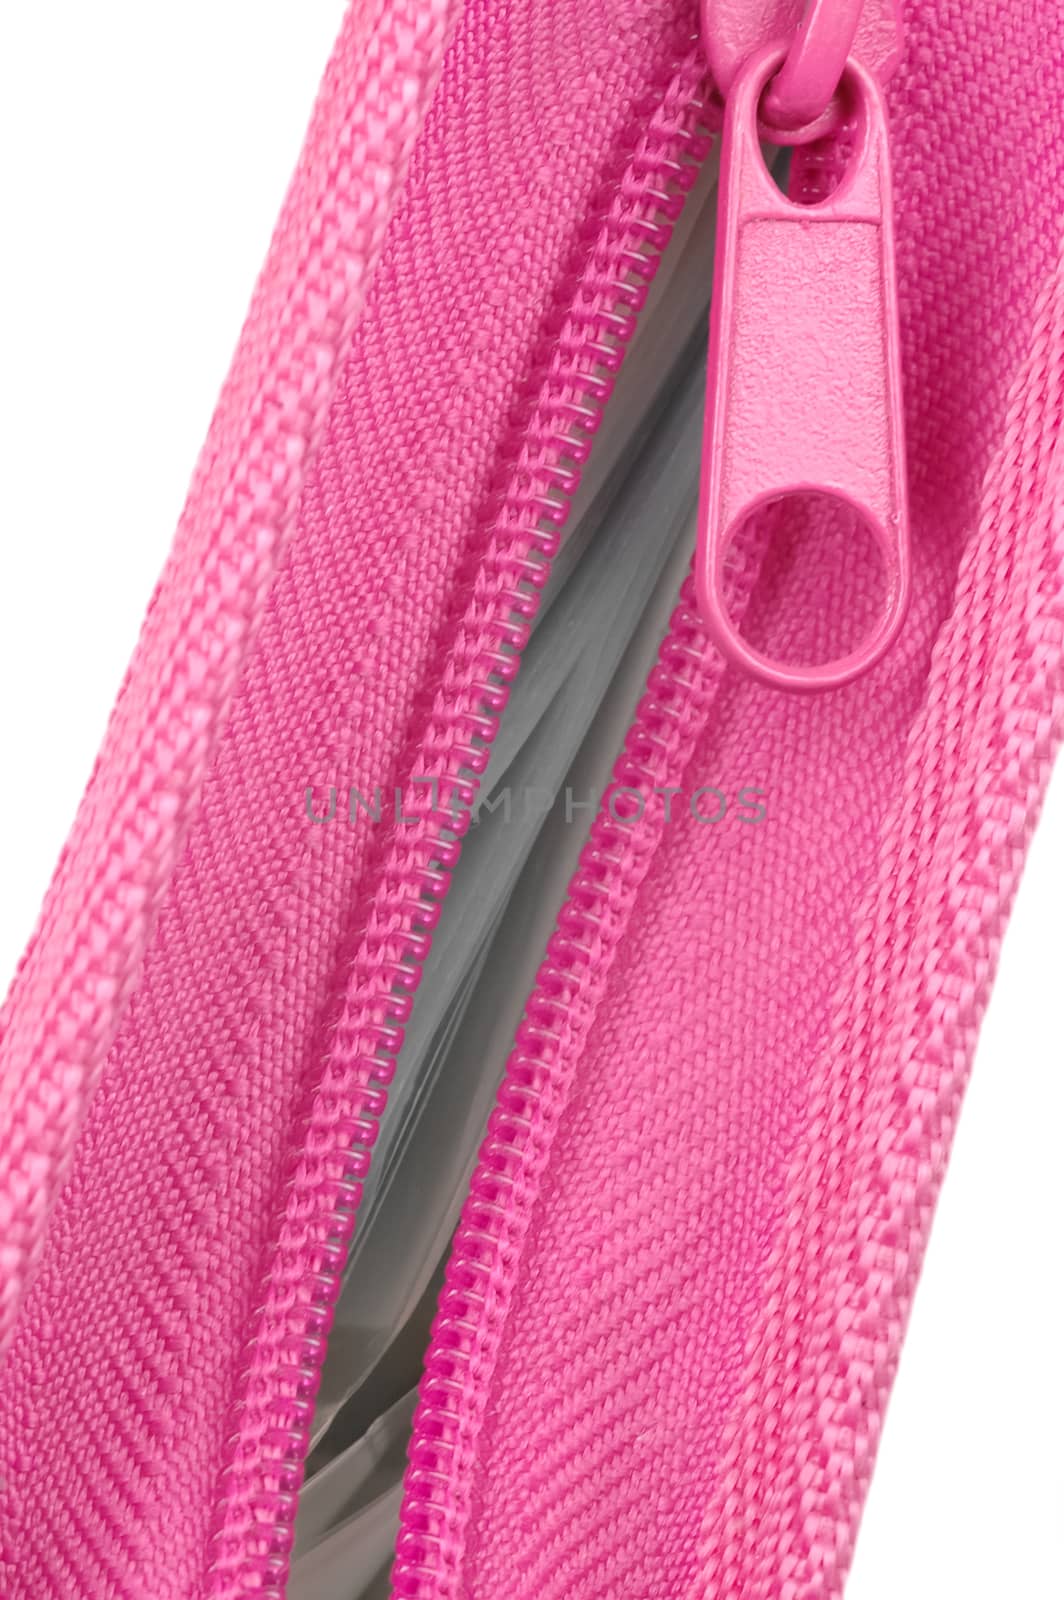 pink zipper folder showing paperwork contents